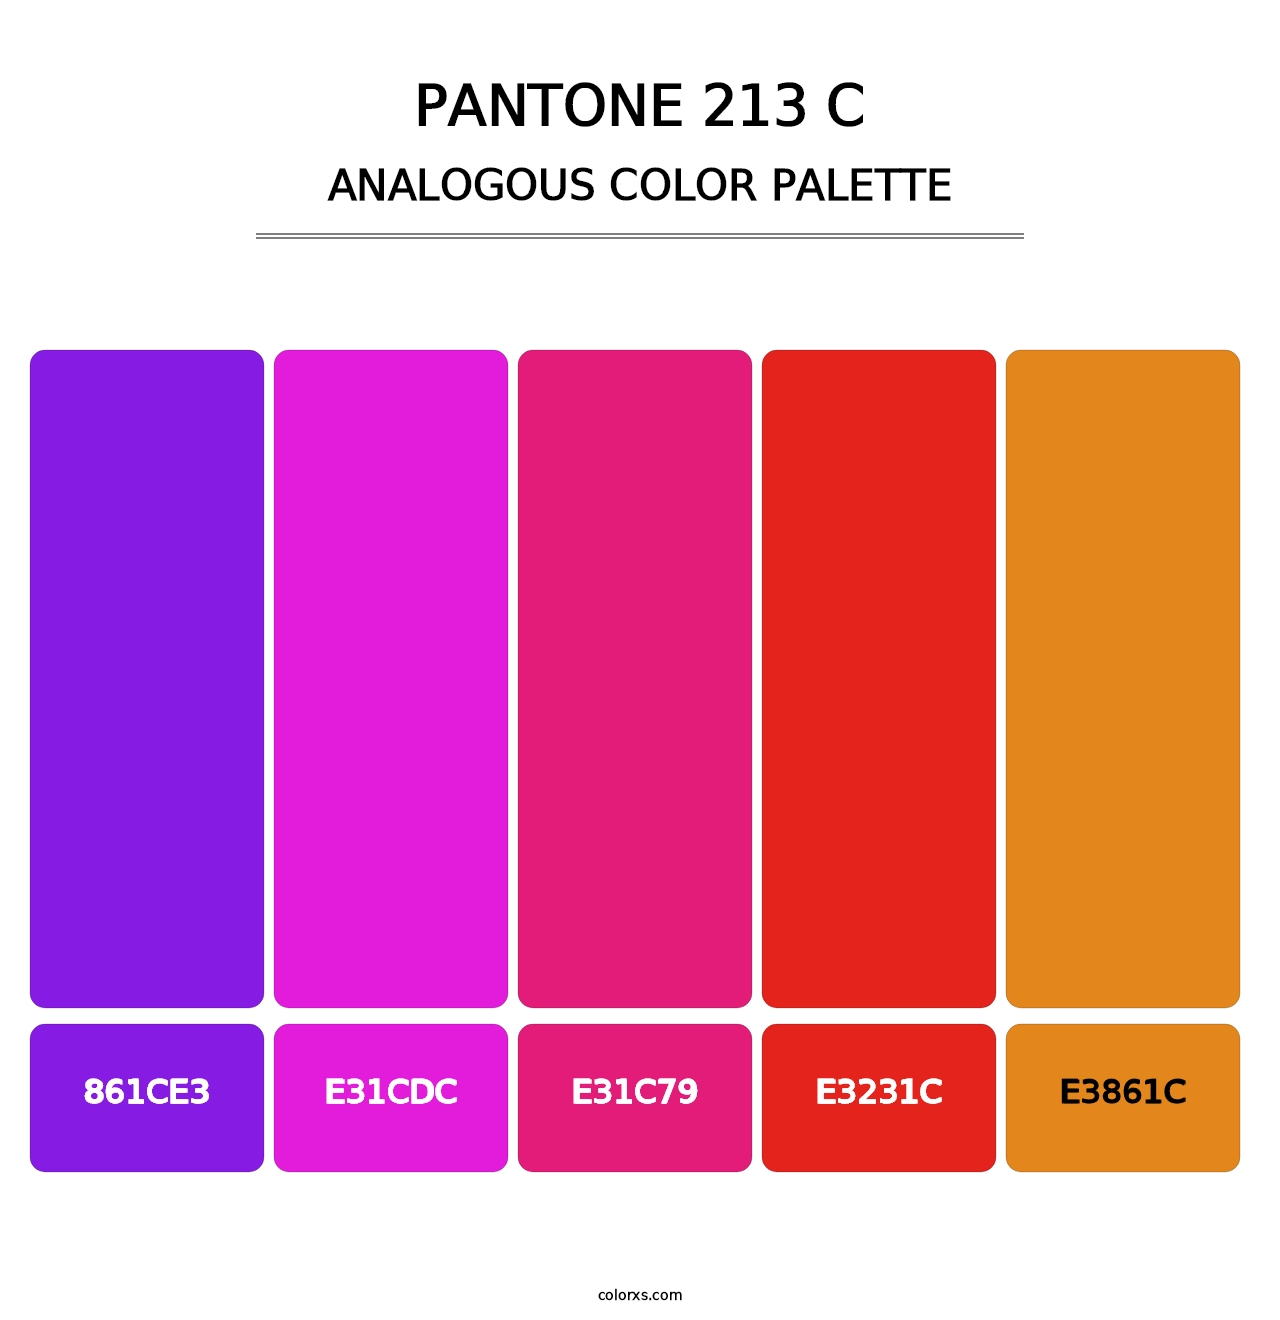 PANTONE 213 C - Analogous Color Palette